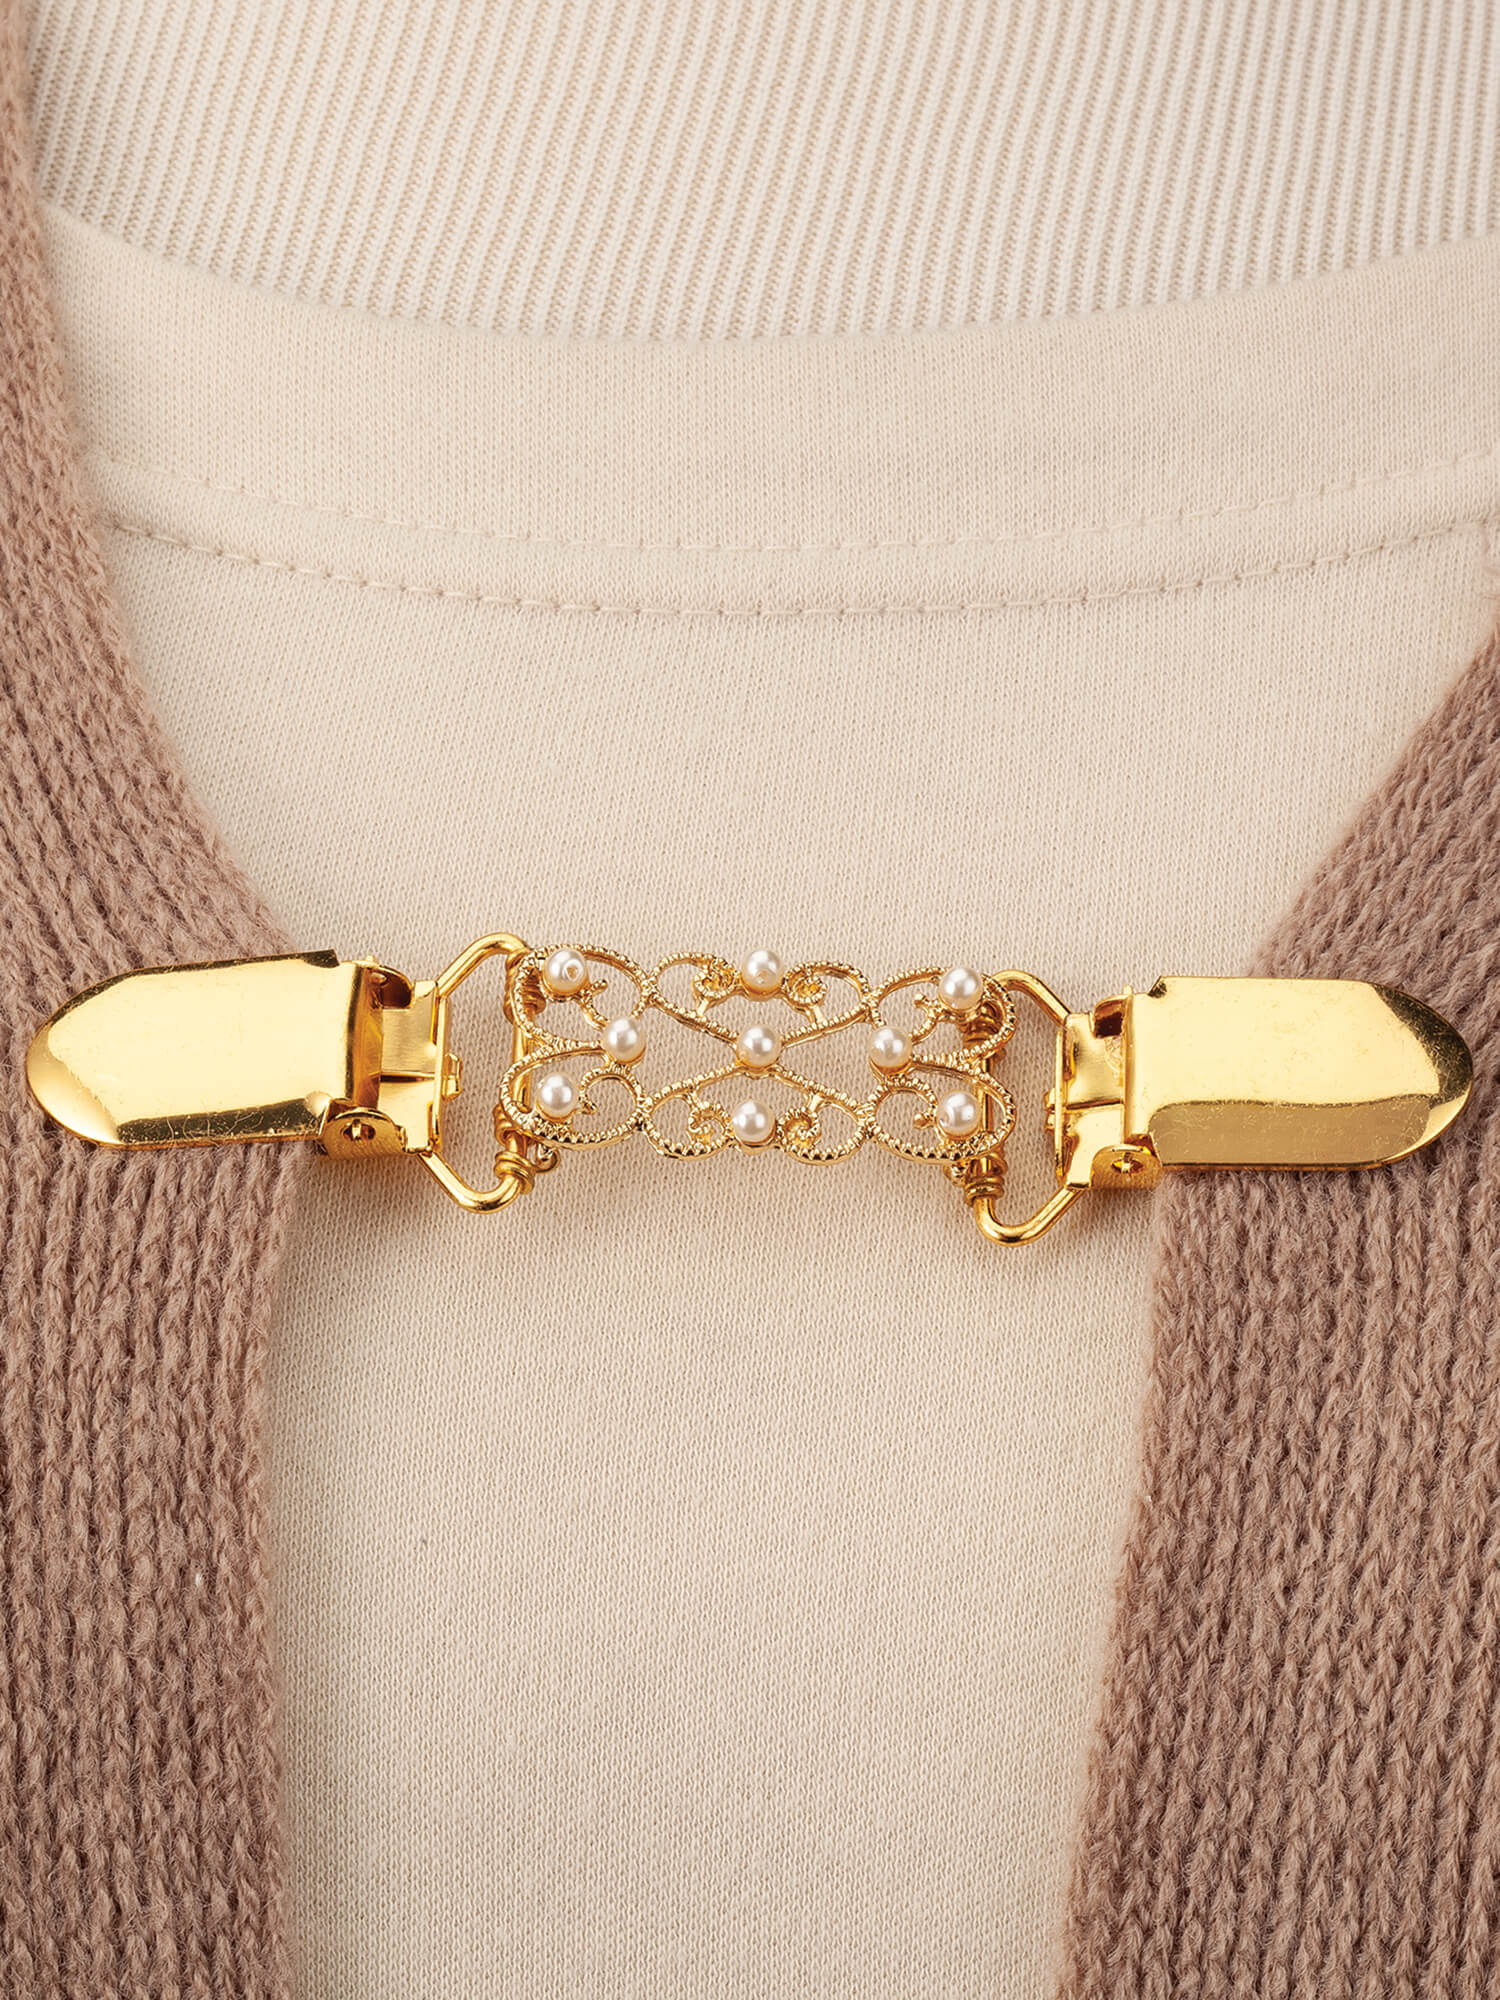 Decorative Sweater Goldtone Clasp